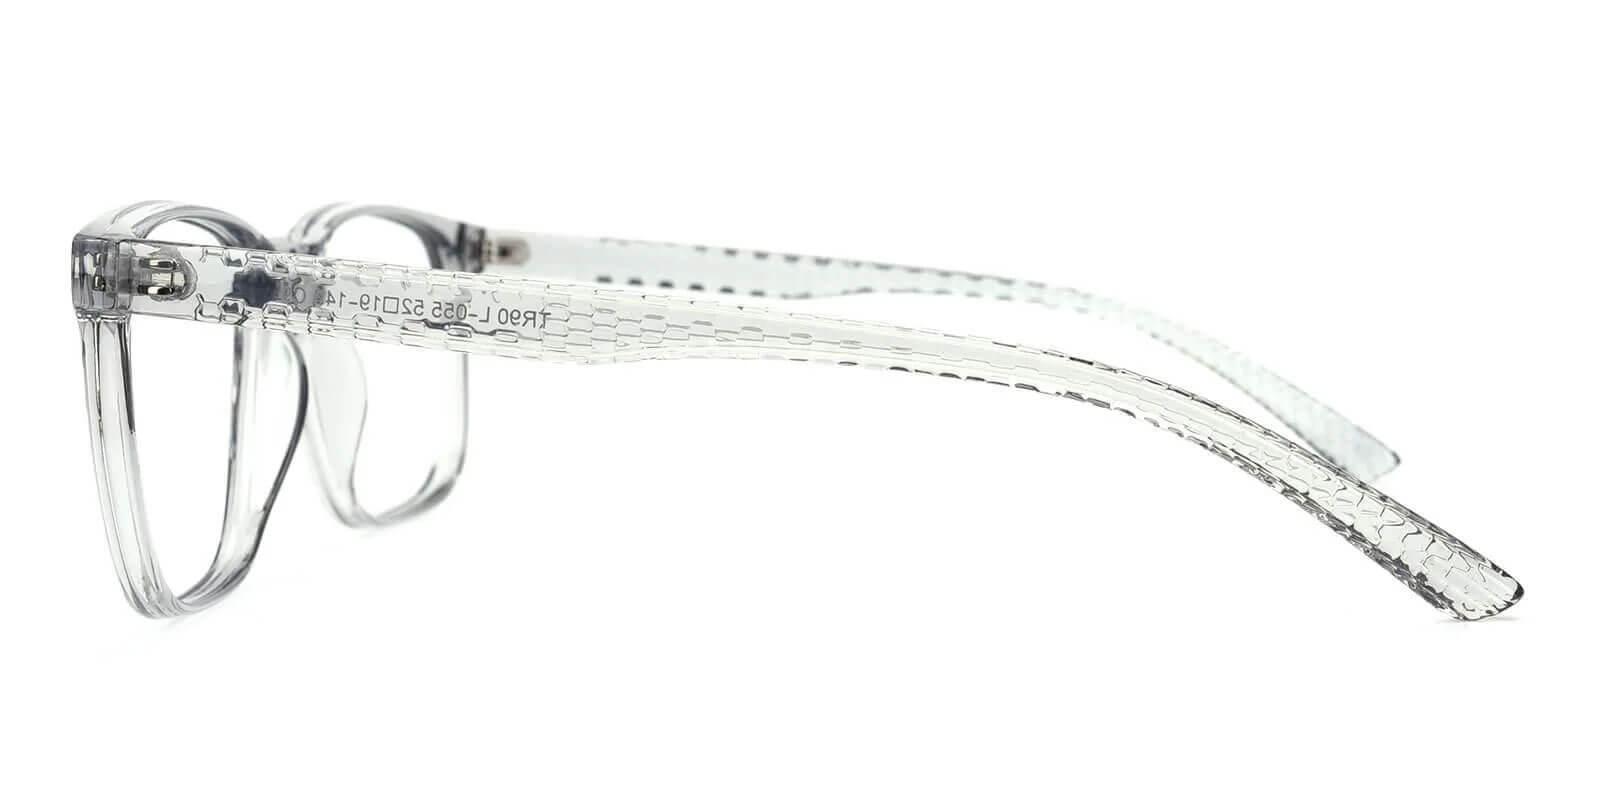 Warren Gray TR UniversalBridgeFit , Eyeglasses Frames from ABBE Glasses